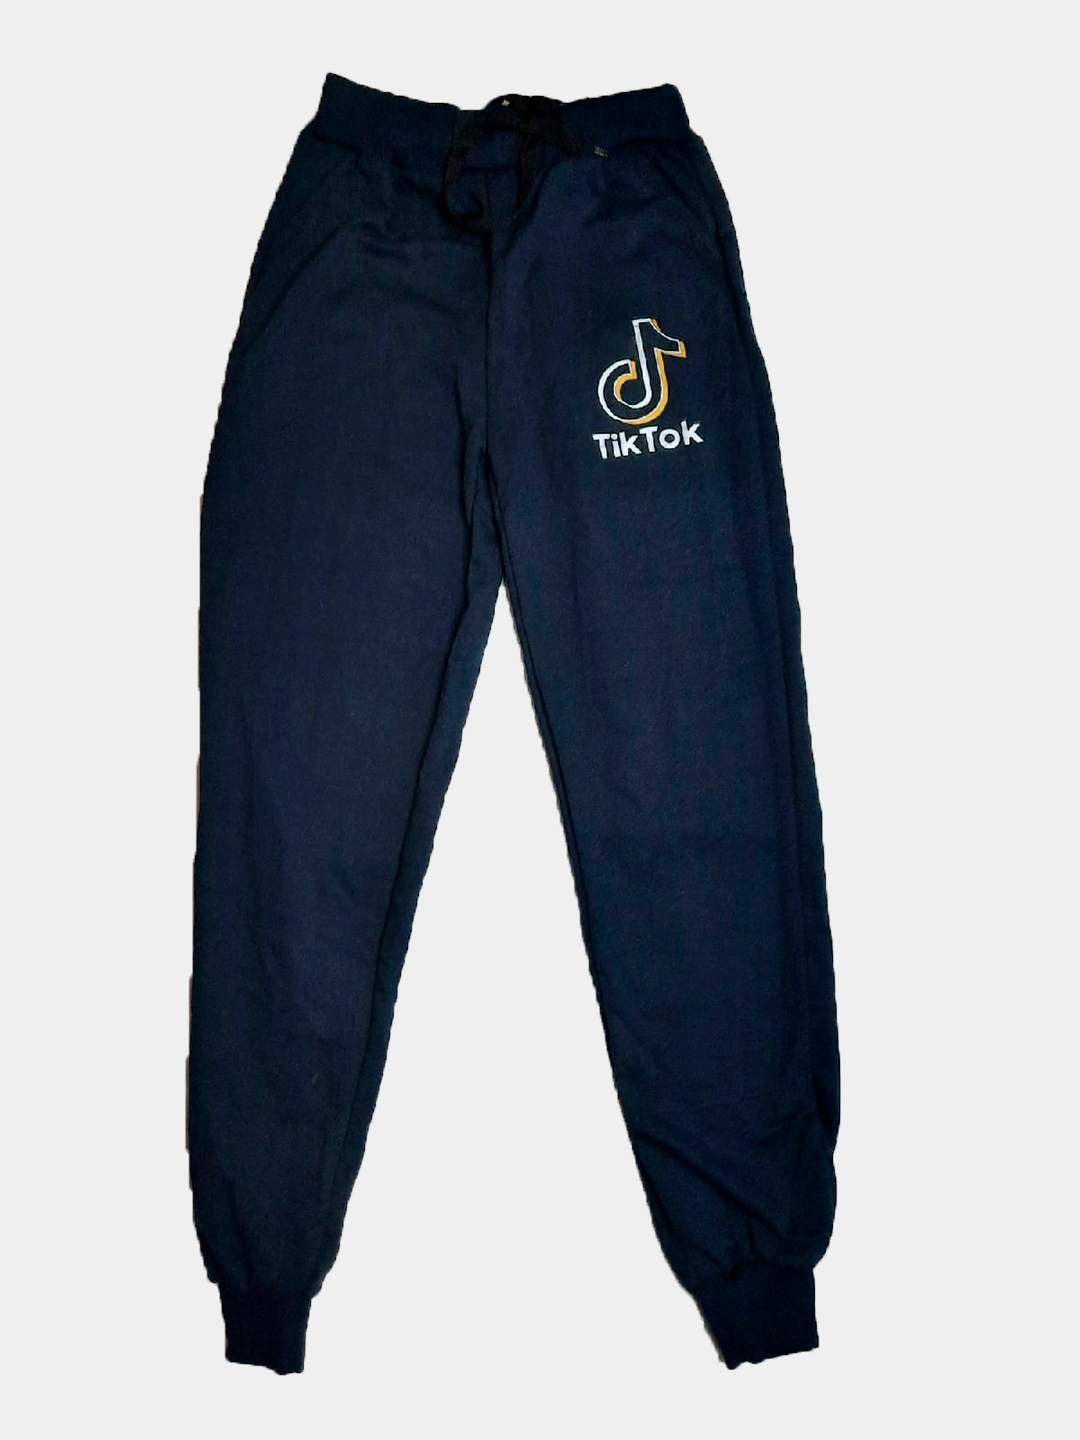 Брюки с начесом спортивные штаны для мальчика джоггеры домашние штаны дляспорта купить по цене 650 ₽ в интернет-магазине KazanExpress